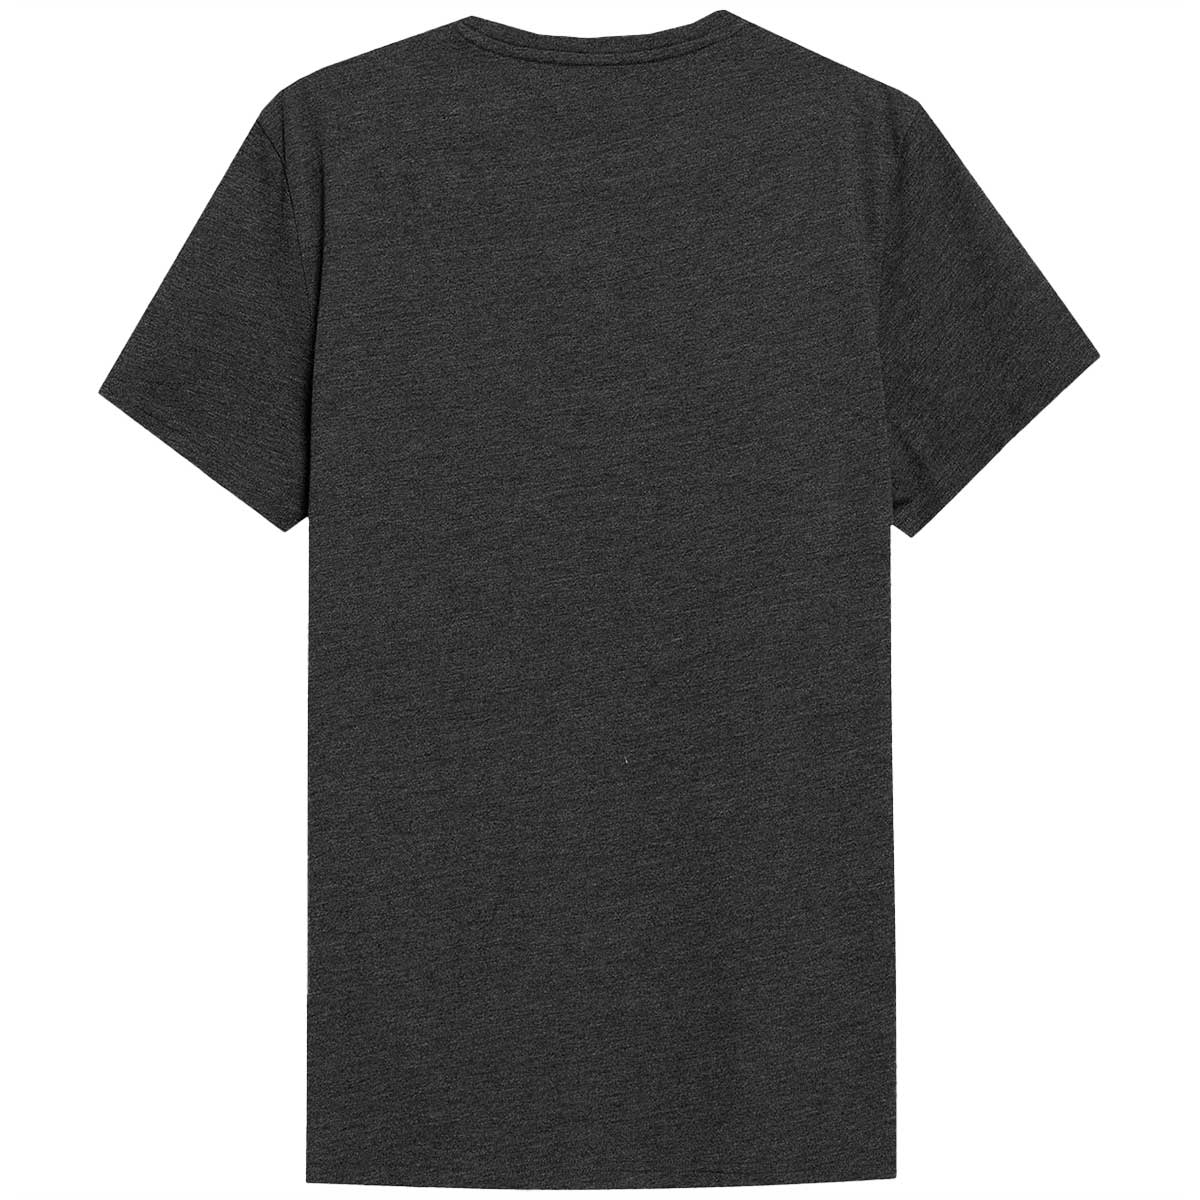 Футболка T-shirt TTSHM0876 Світло-Сірий/Темно-Сірий /Темно-Синій - 3 шт.